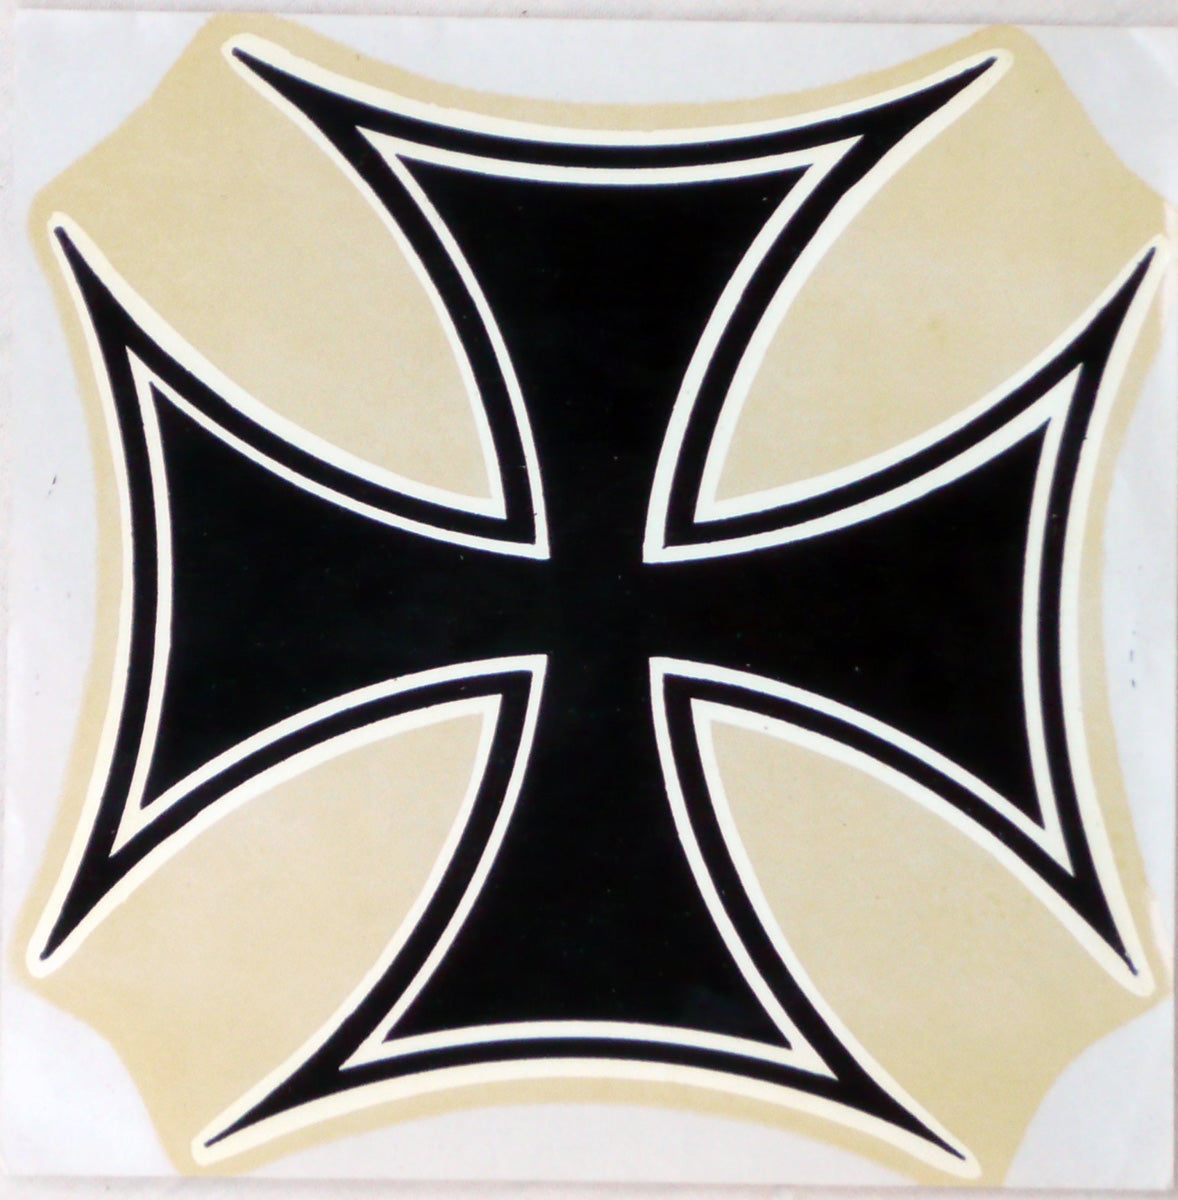 Maltese Cross sticker. c1964.